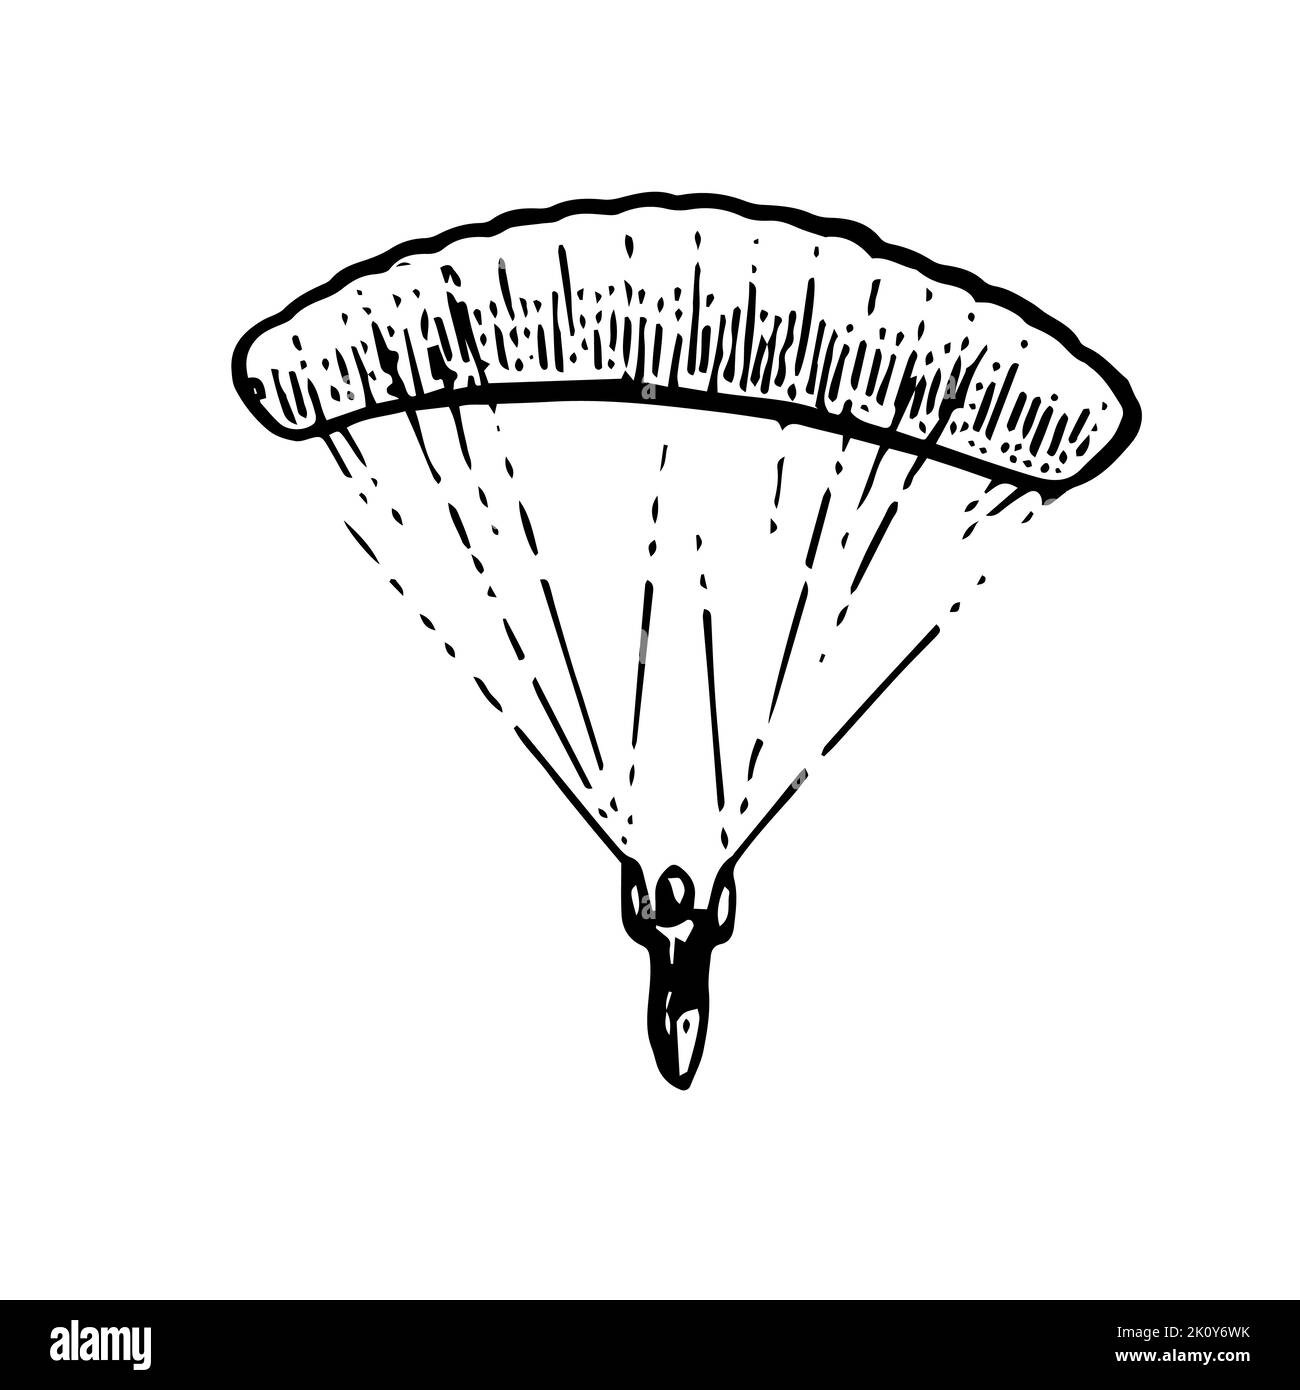 Gleitschirm-Fallschirmspringer fliegt. Gleitschirm mit Fallschirm. Air Extremsport. Kontrollierter Höhenflug. Handgezeichnete Umrissskizze. Isoliert auf Weiß Stock Vektor